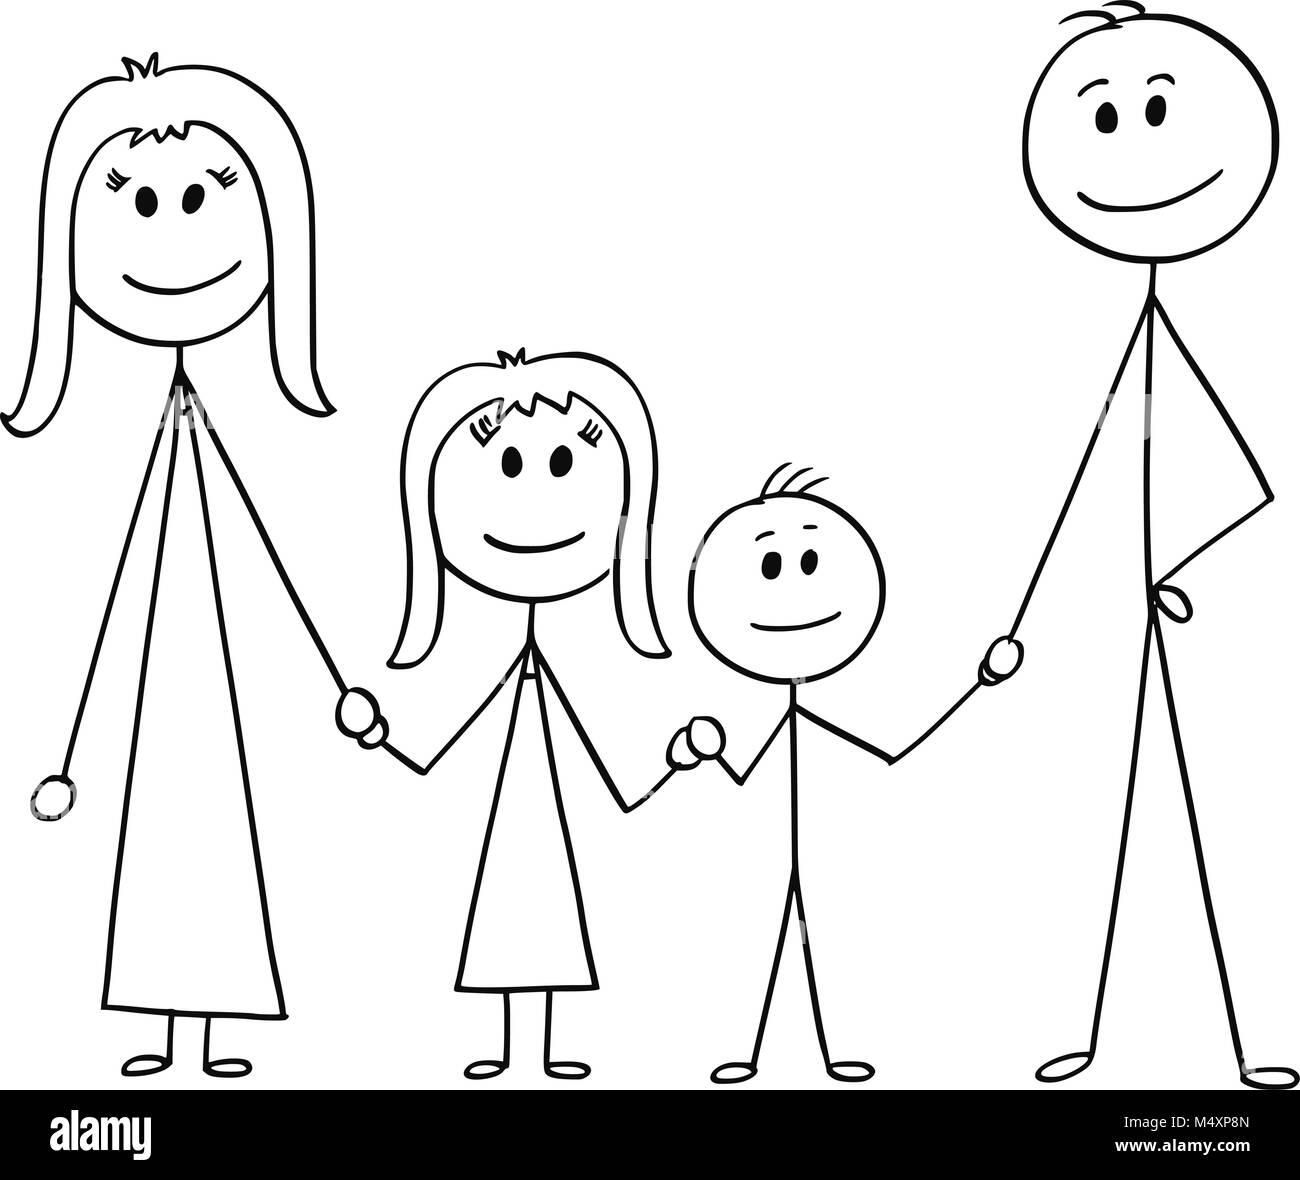 Cartoon of Happy Family Stock Vector